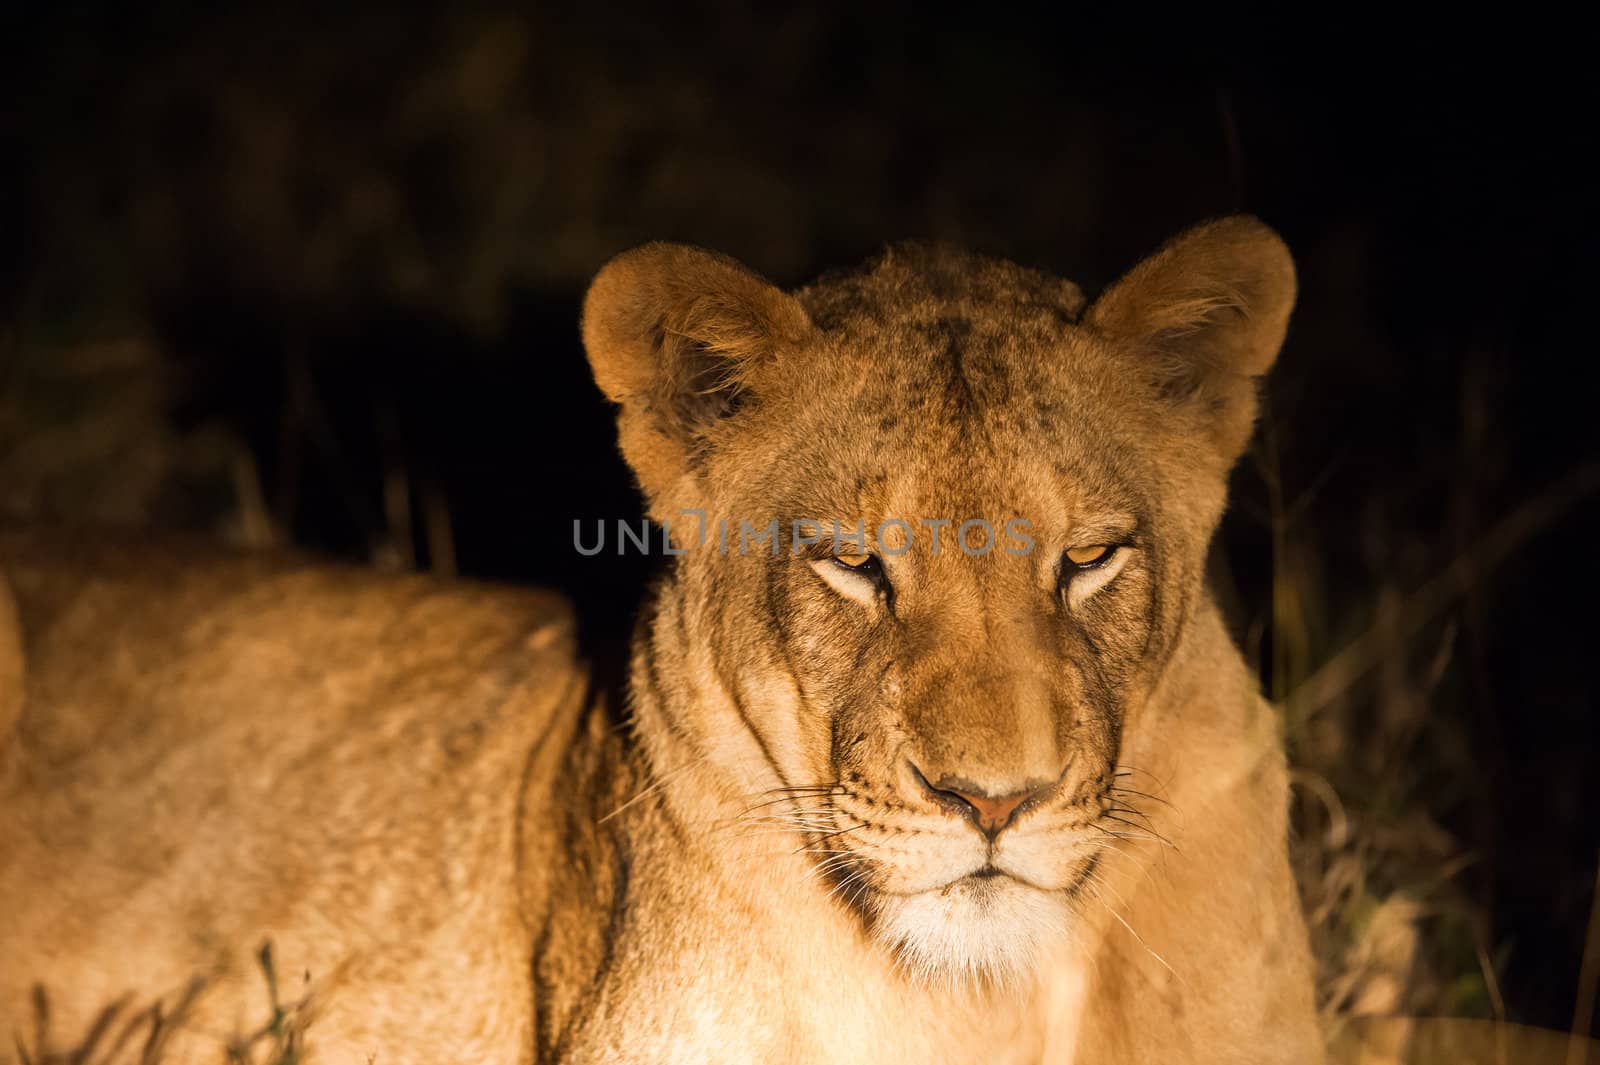 Female lion up close at night, Kruger National Park